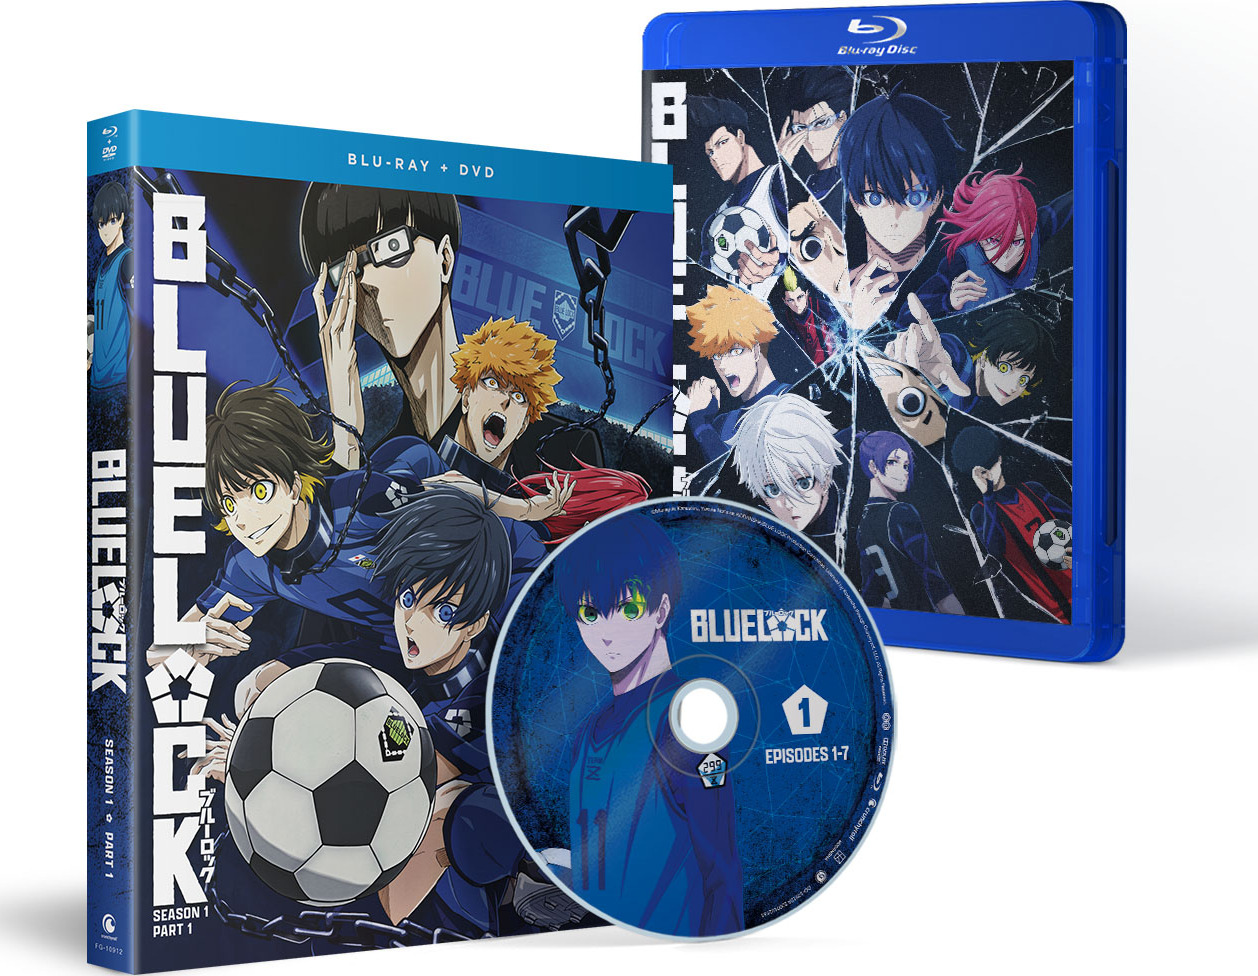  BLUELOCK: Season 1 Part 1 - Blu-ray + DVD : Various, Various:  Movies & TV